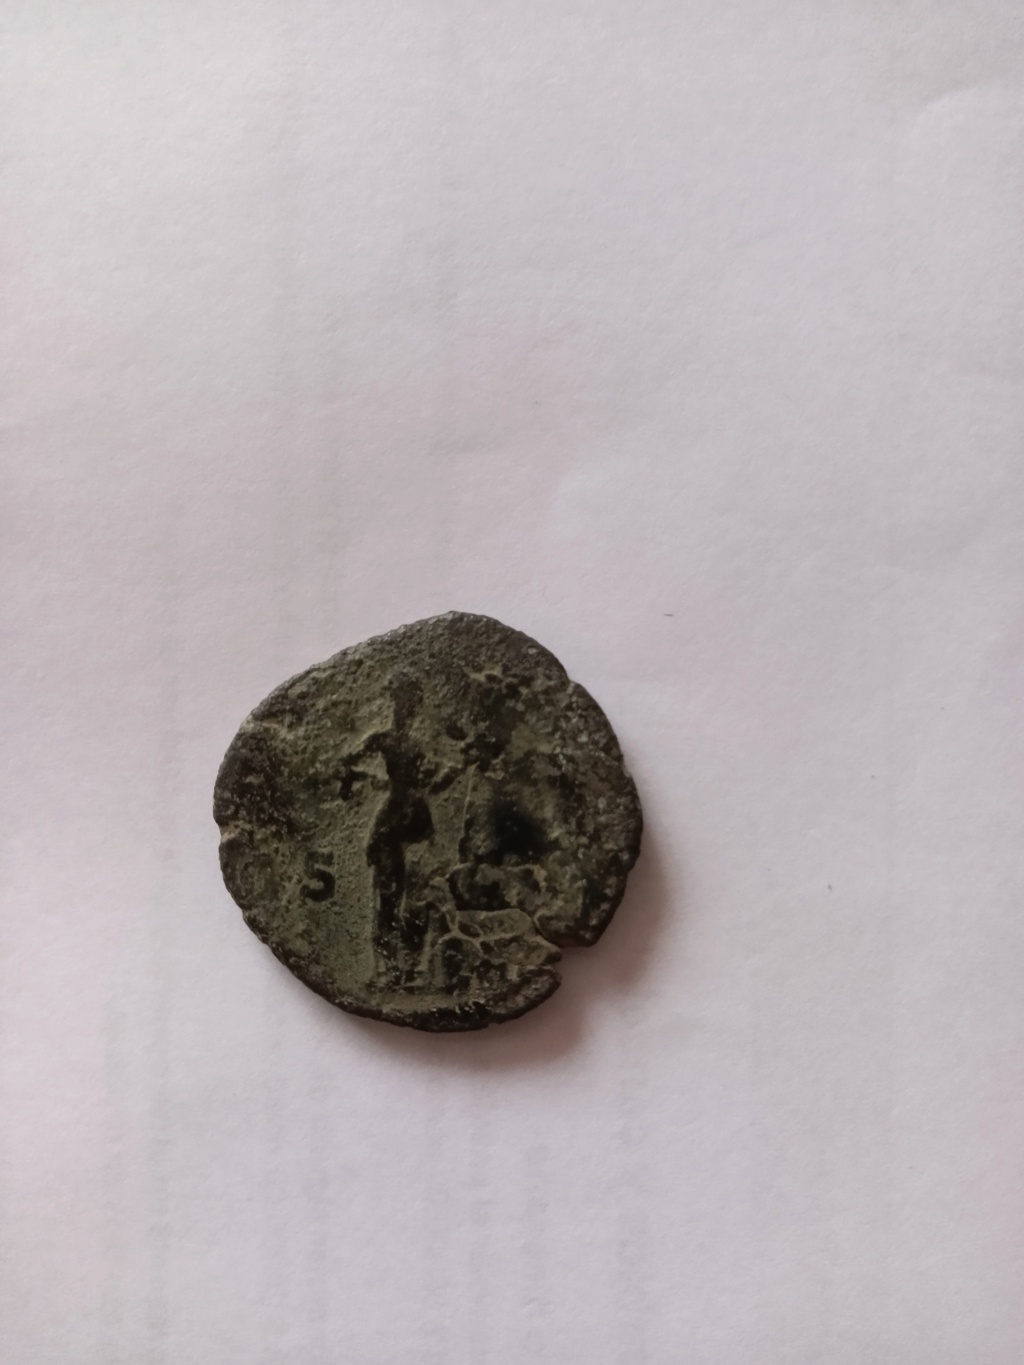 Nuevo en el coleccionismo de monedas romanas 17154511